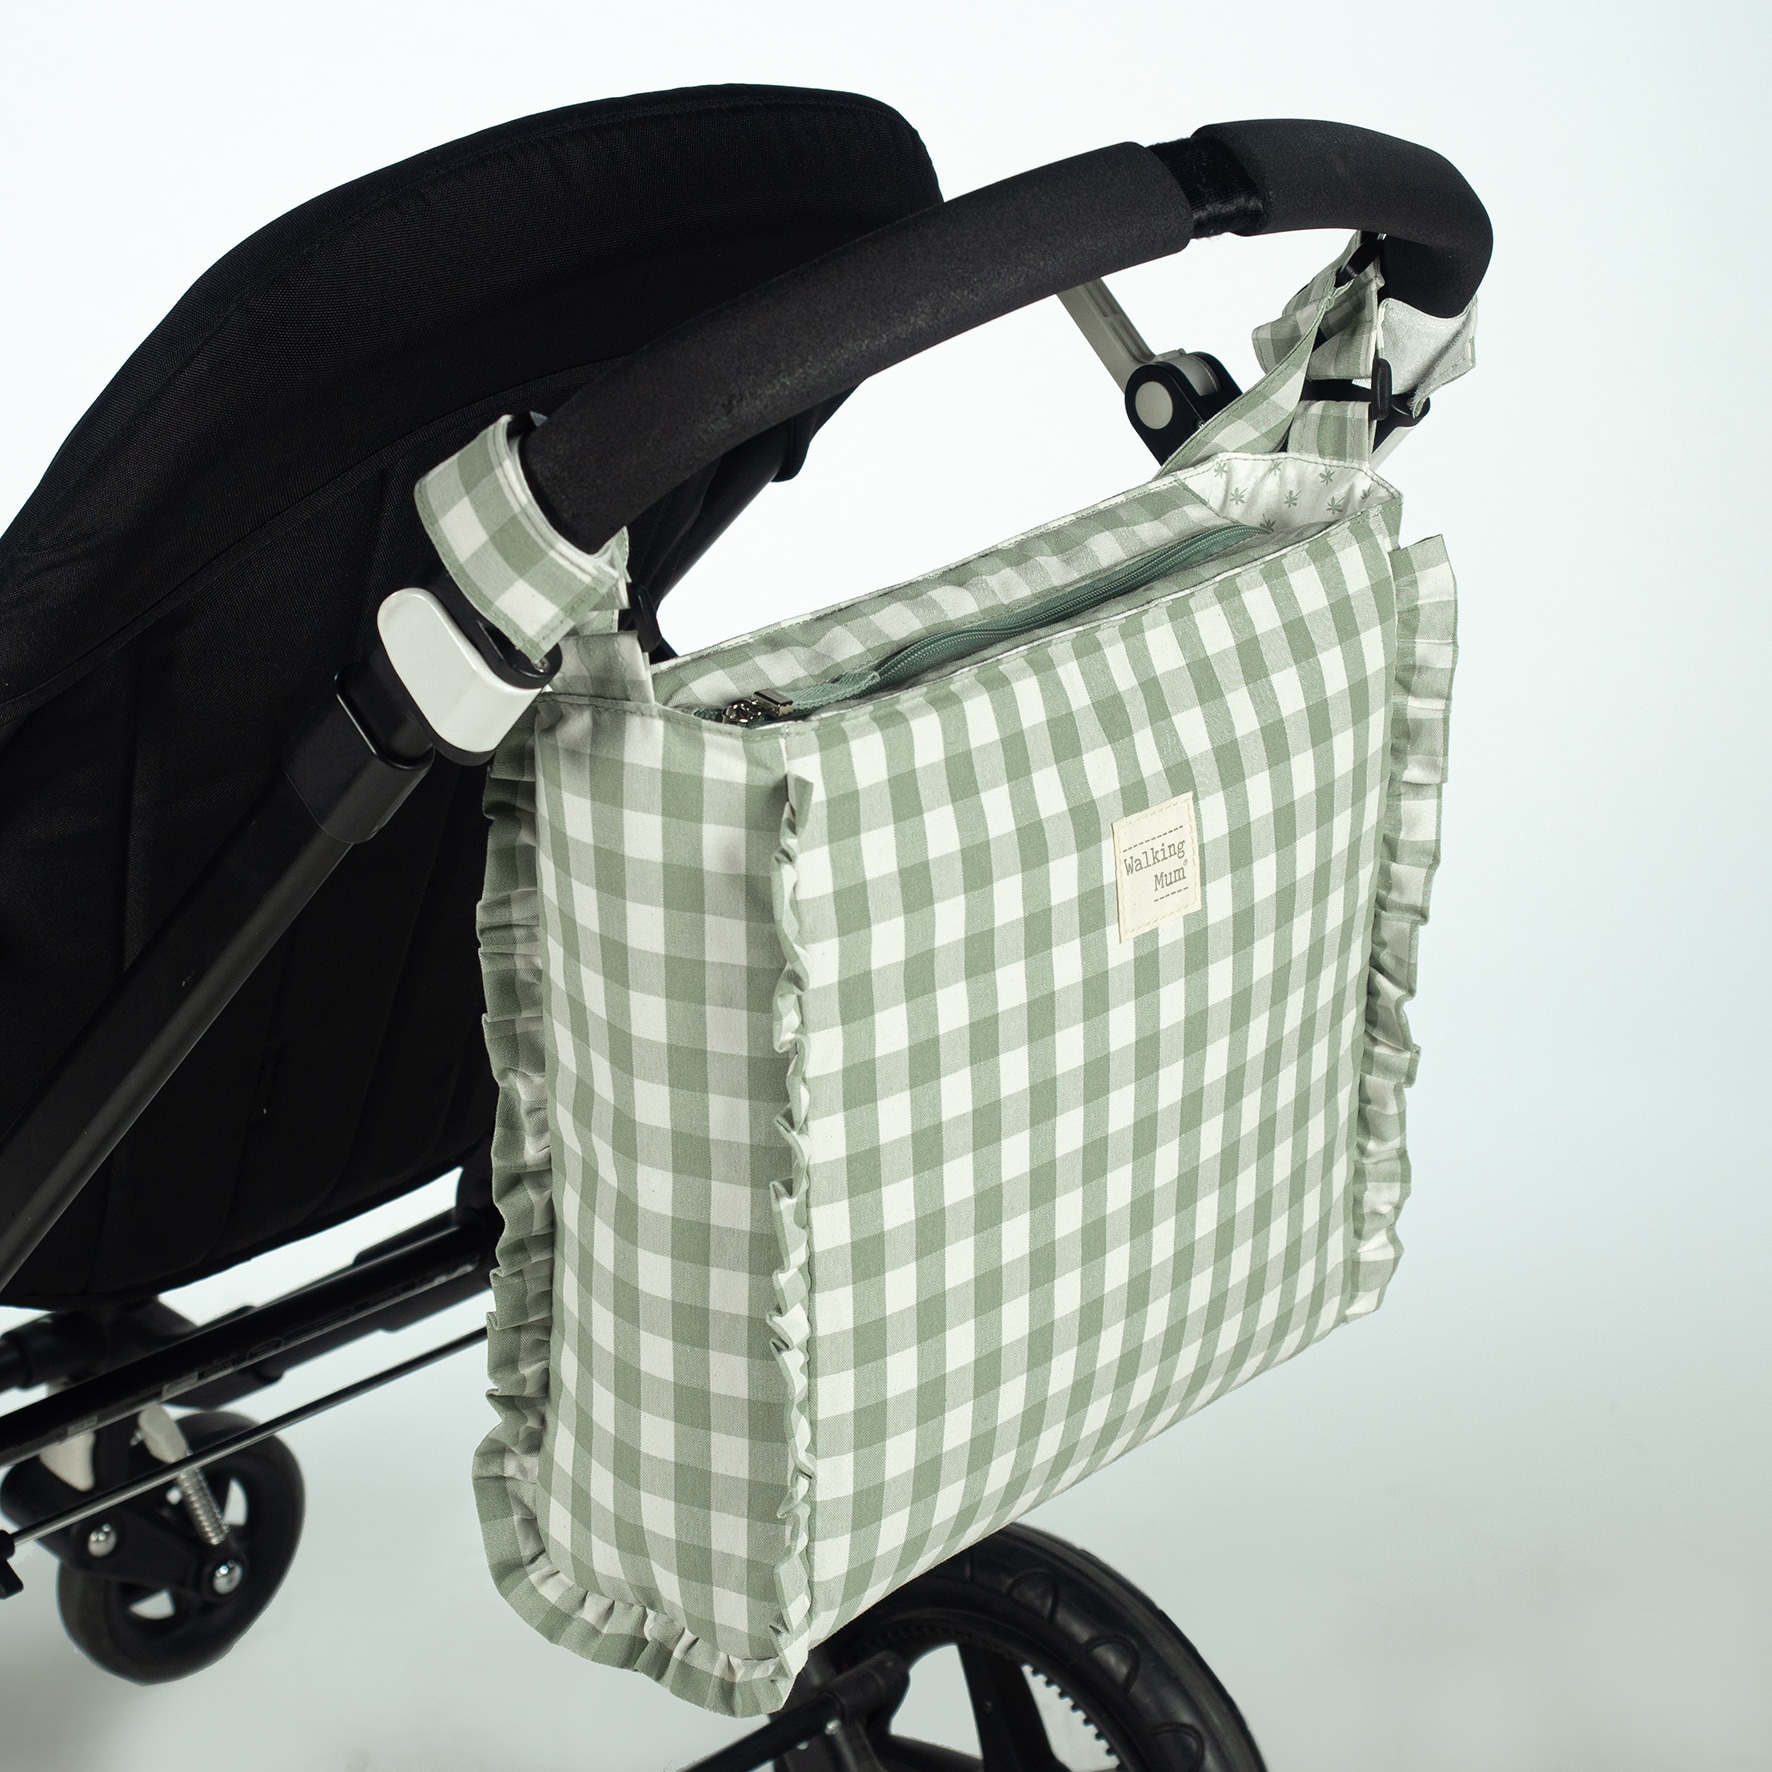 Bolsa Canastilla Remy Walking Mum Bolso cambiador Remy en cuadro vichy XL  para silla de paseo que incluye cambiador para bebe.